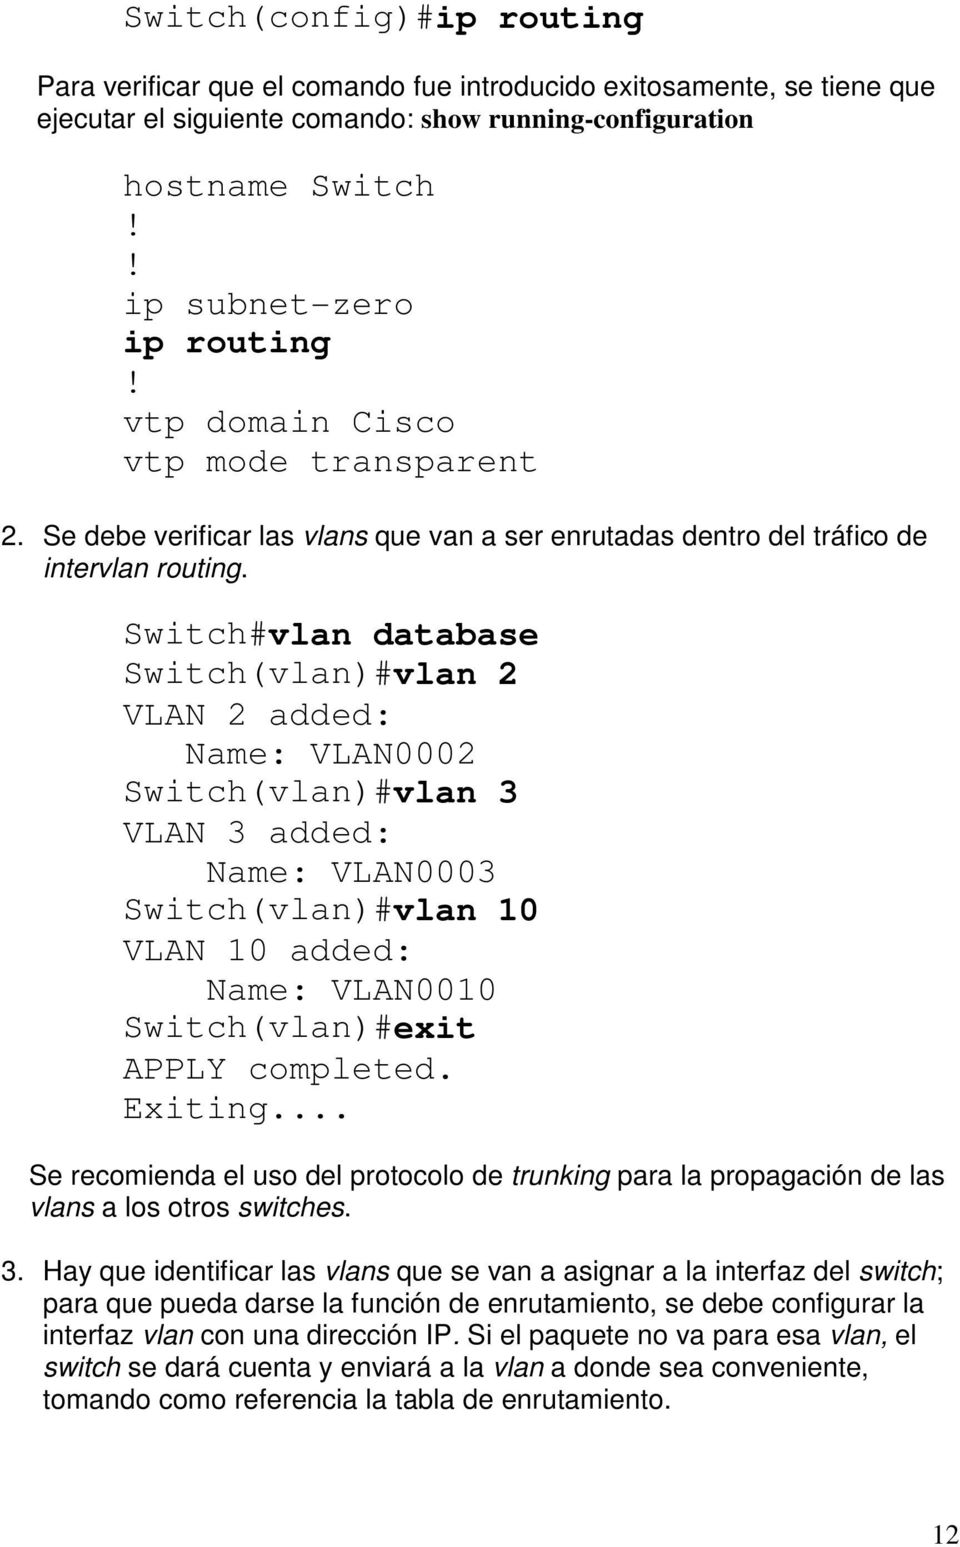 Switch#vlan database Switch(vlan)#vlan 2 VLAN 2 added: Name: VLAN0002 Switch(vlan)#vlan 3 VLAN 3 added: Name: VLAN0003 Switch(vlan)#vlan 10 VLAN 10 added: Name: VLAN0010 Switch(vlan)#exit APPLY